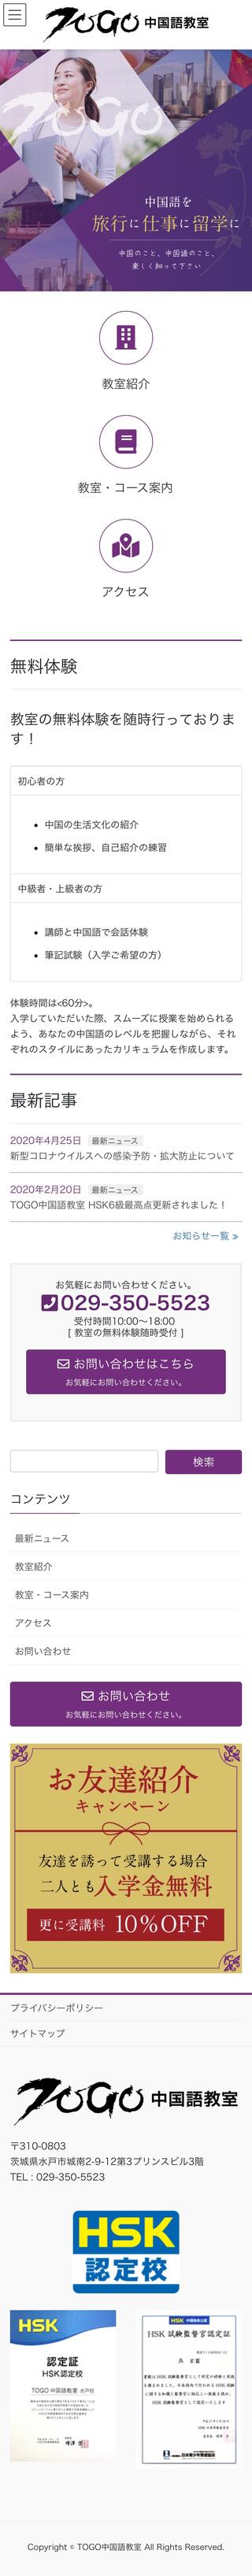 TOGO中国語教室のスマートフォン画面